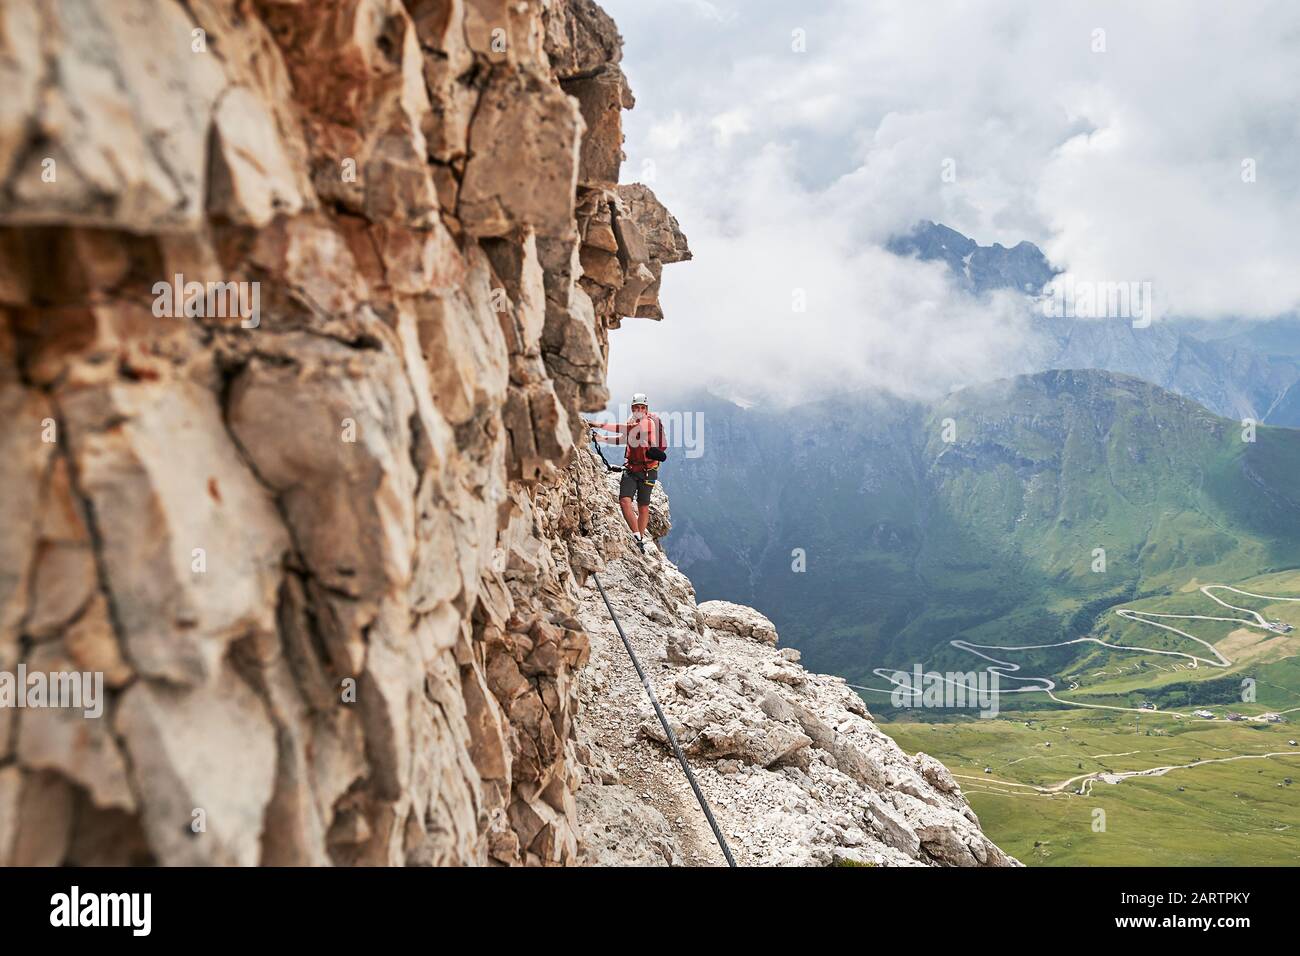 Uomo in via ferrata Cesare Piazzetta, Dolomiti, Italia, vicino alle pareti rocciose, con una tortuosa strada sottostante, in una giornata estiva con nuvole Foto Stock